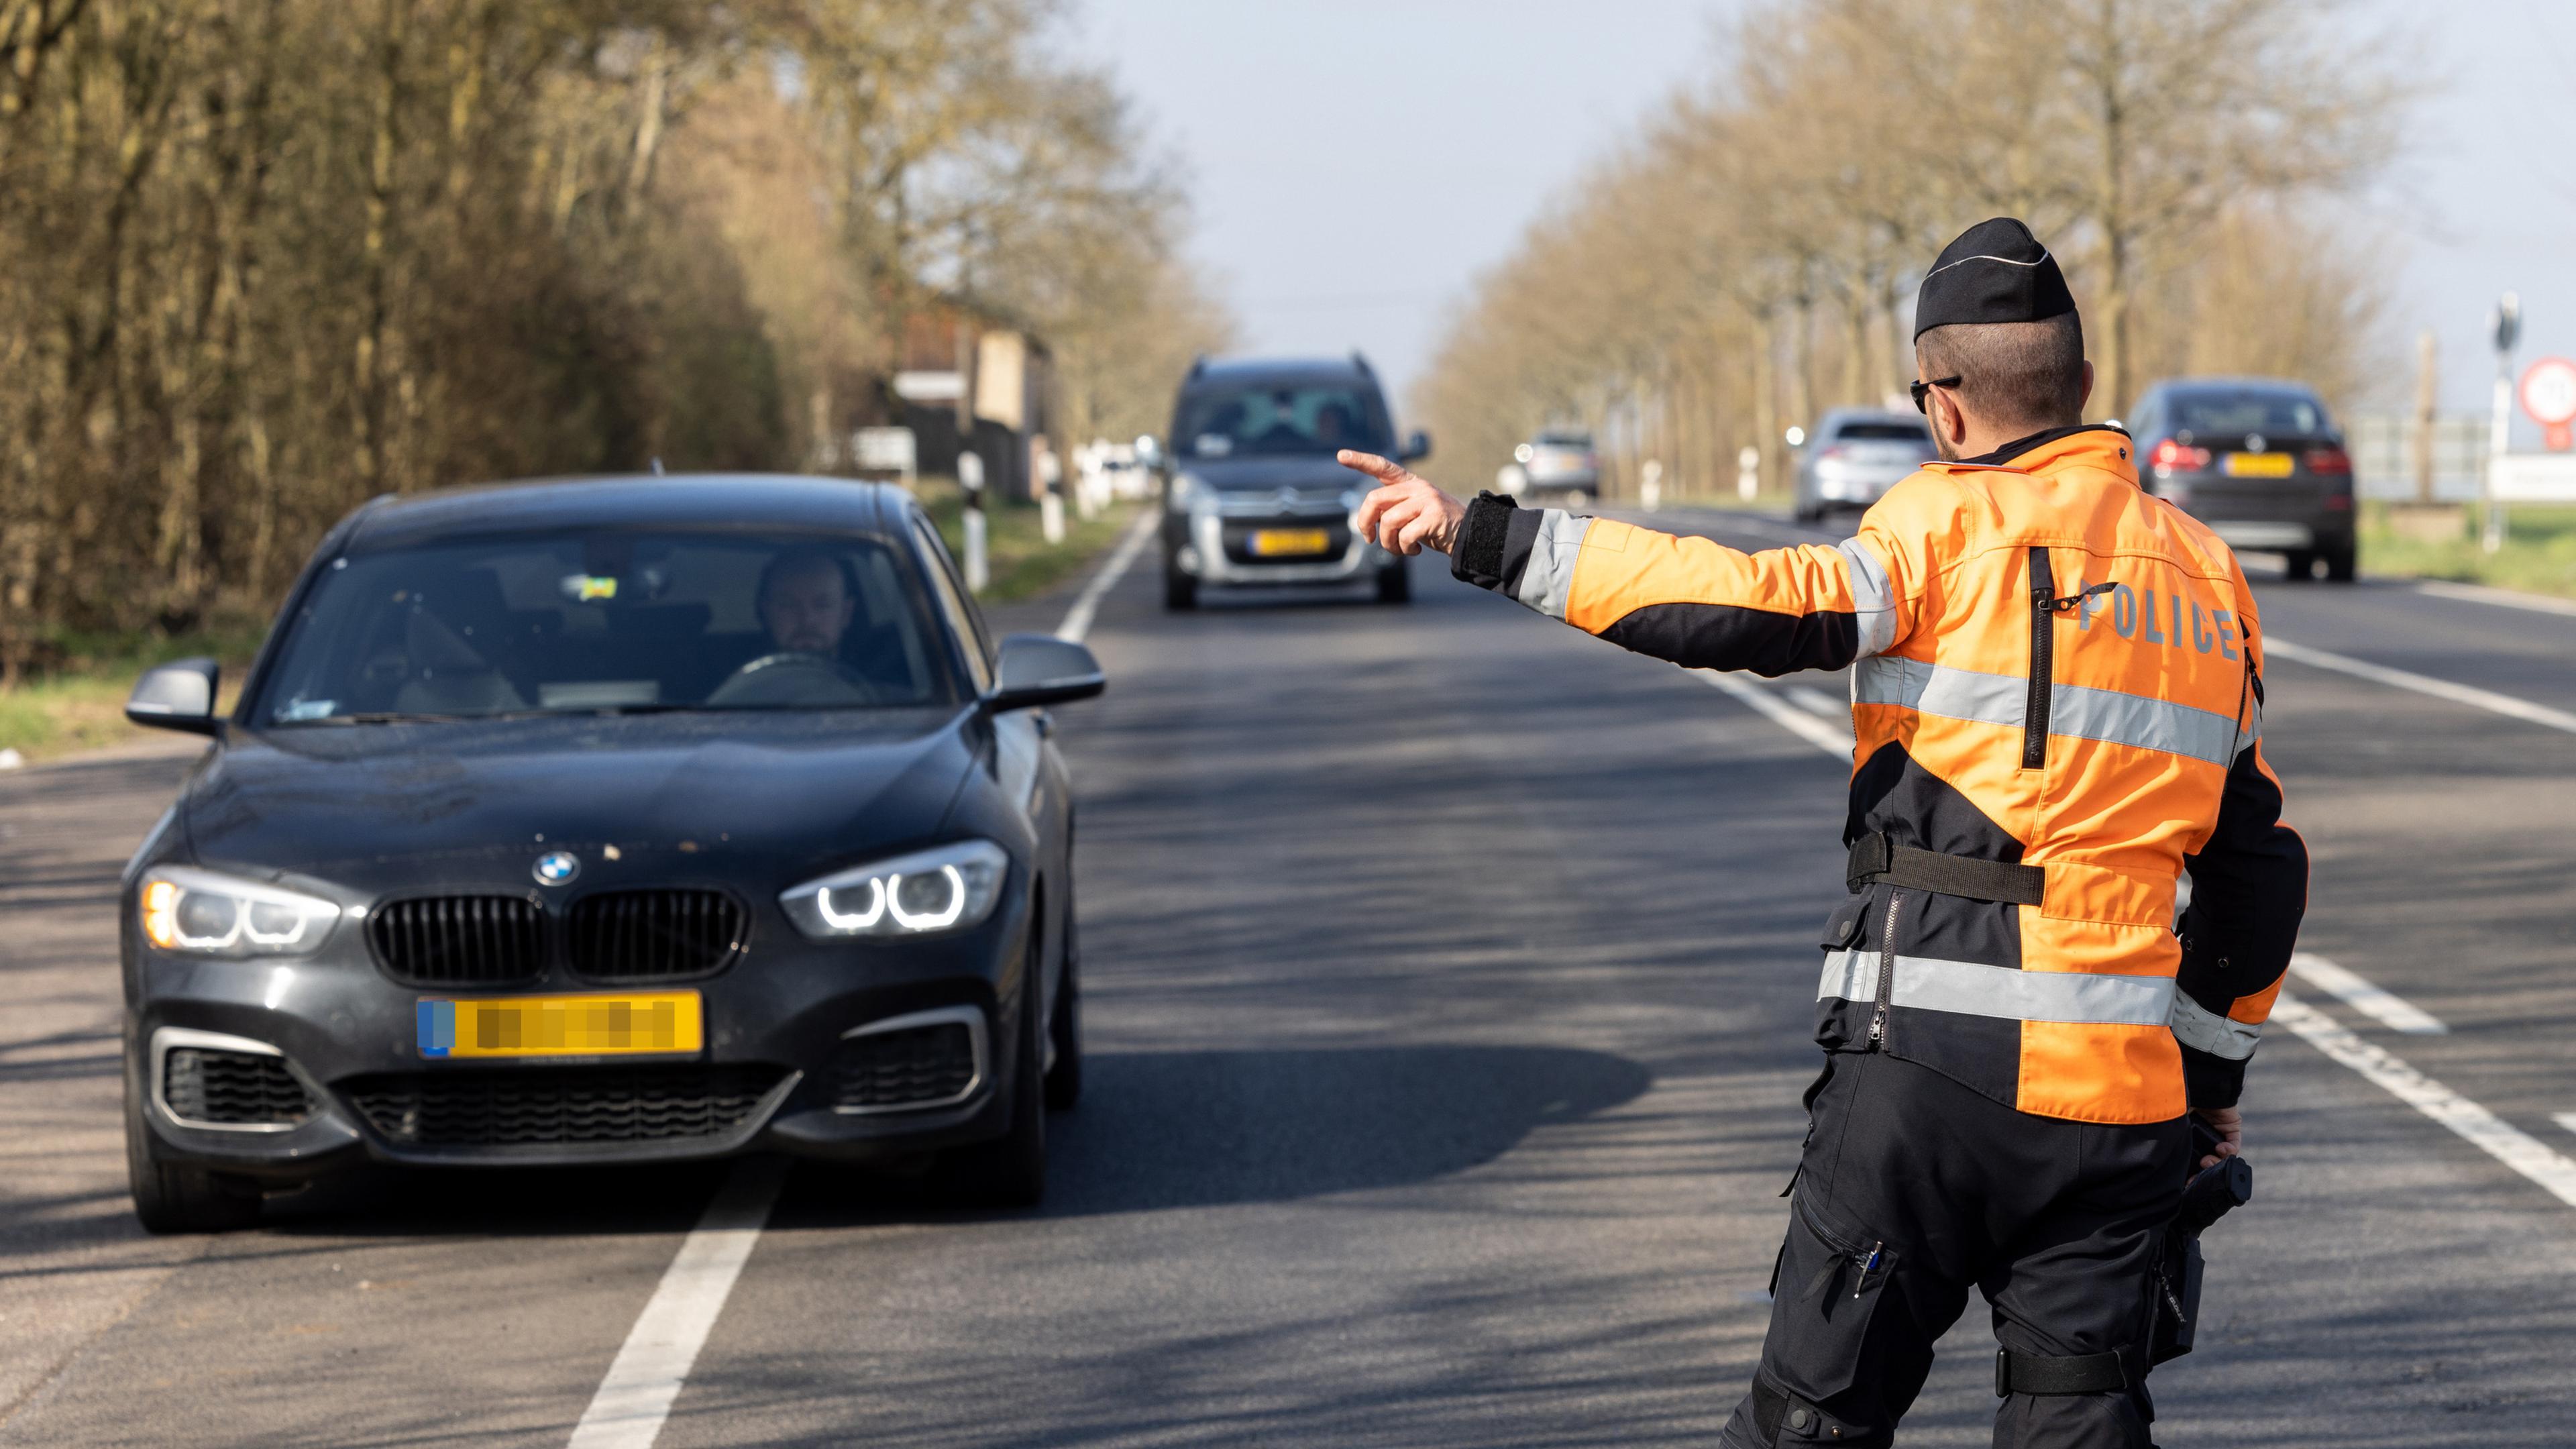 Tous les ans au mois d’avril, la police luxembourgeois organise une série de contrôles de vitesse.